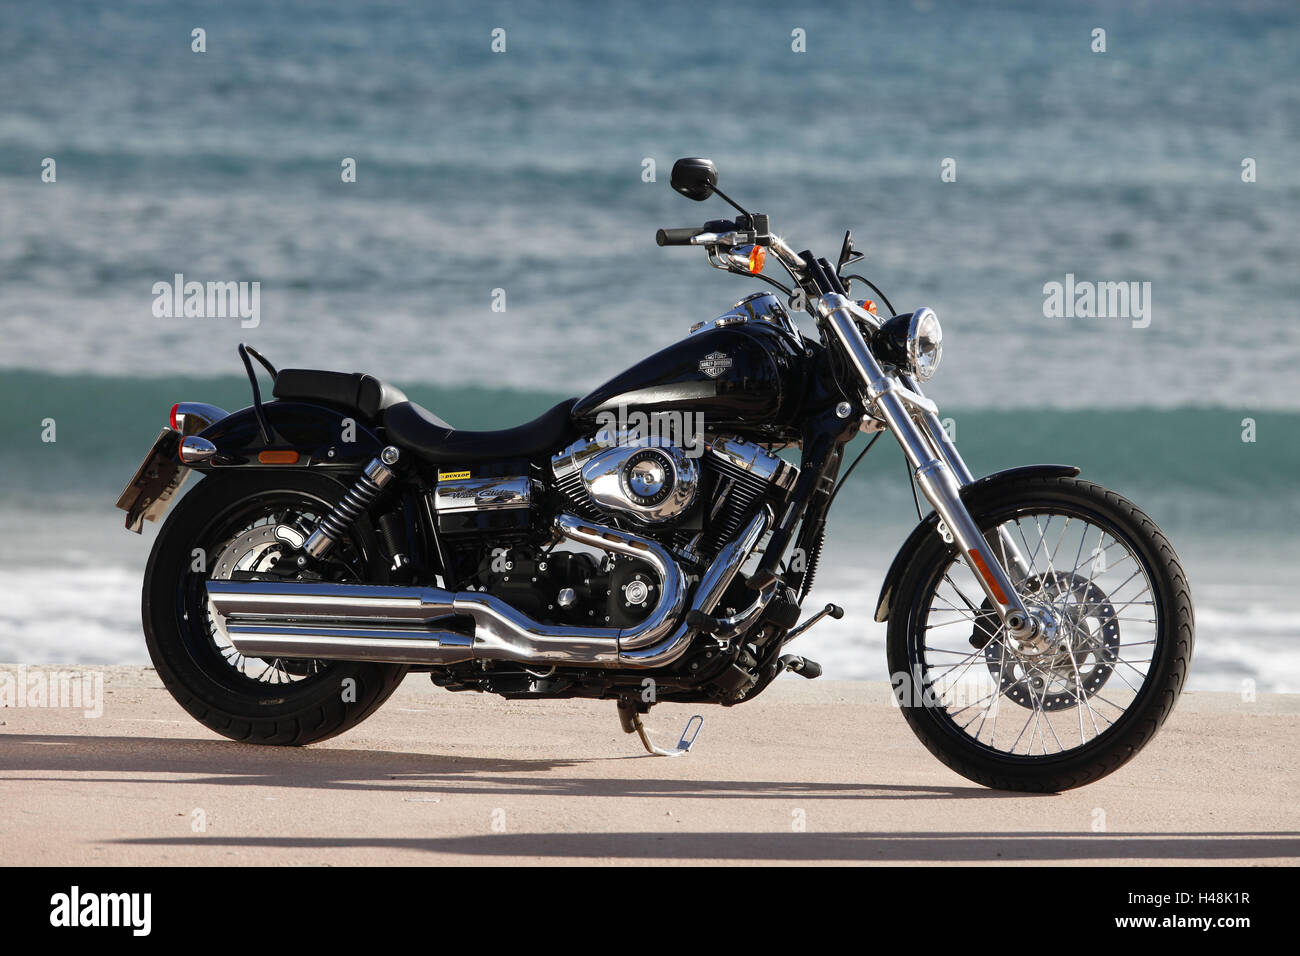 Motocicleta, Cruiser, Harley Davidson Wide Glide, negro, mar de fondo, lado derecho, estándar Foto de stock